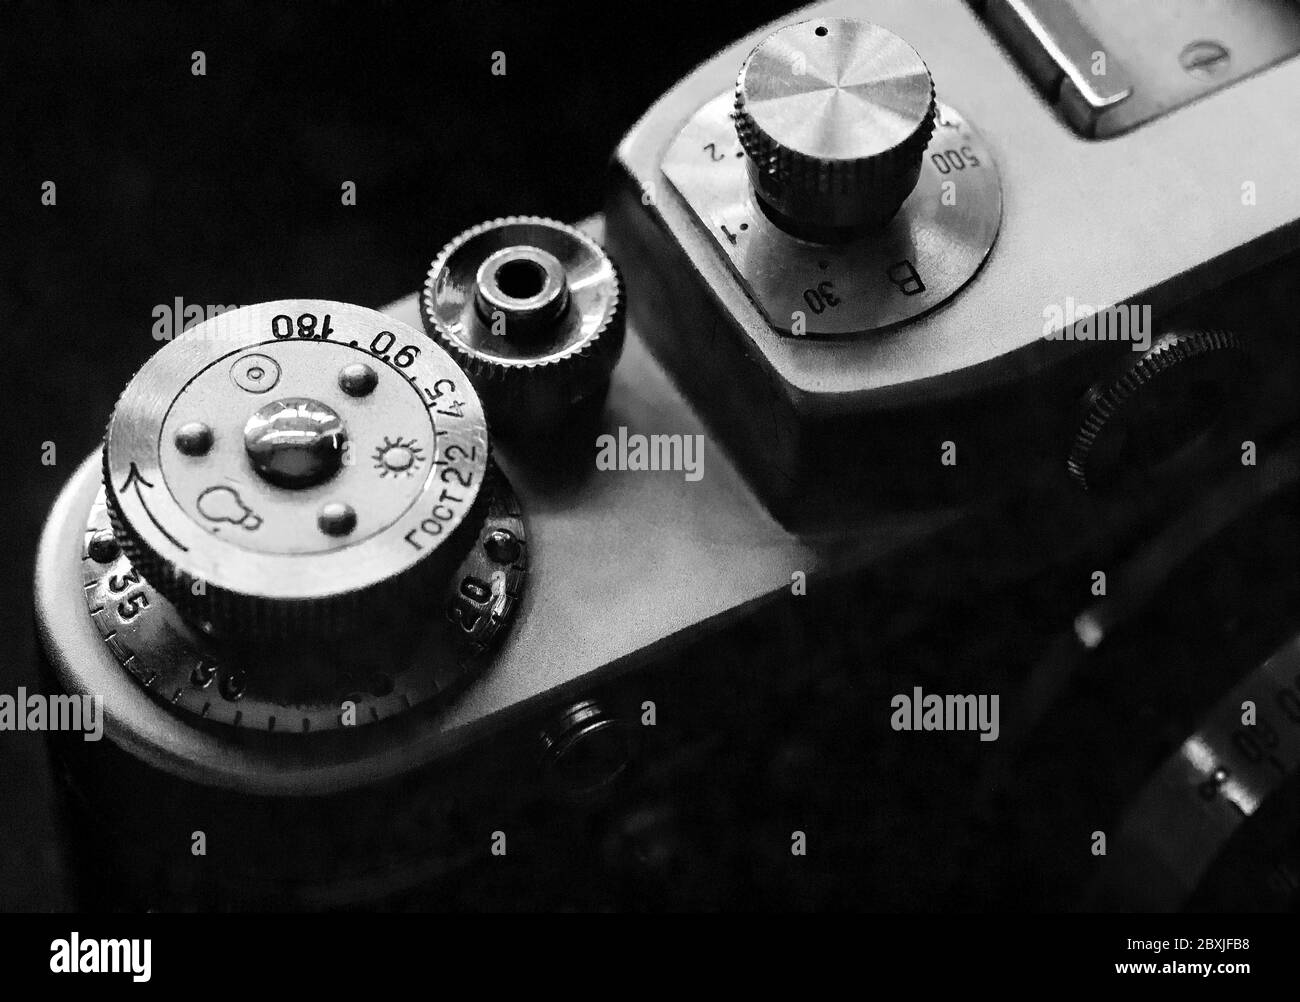 Schwarz-Weiß-Bild mit einer alten Fed 3 russischen Entfernungsmesser Kamera. Stockfoto